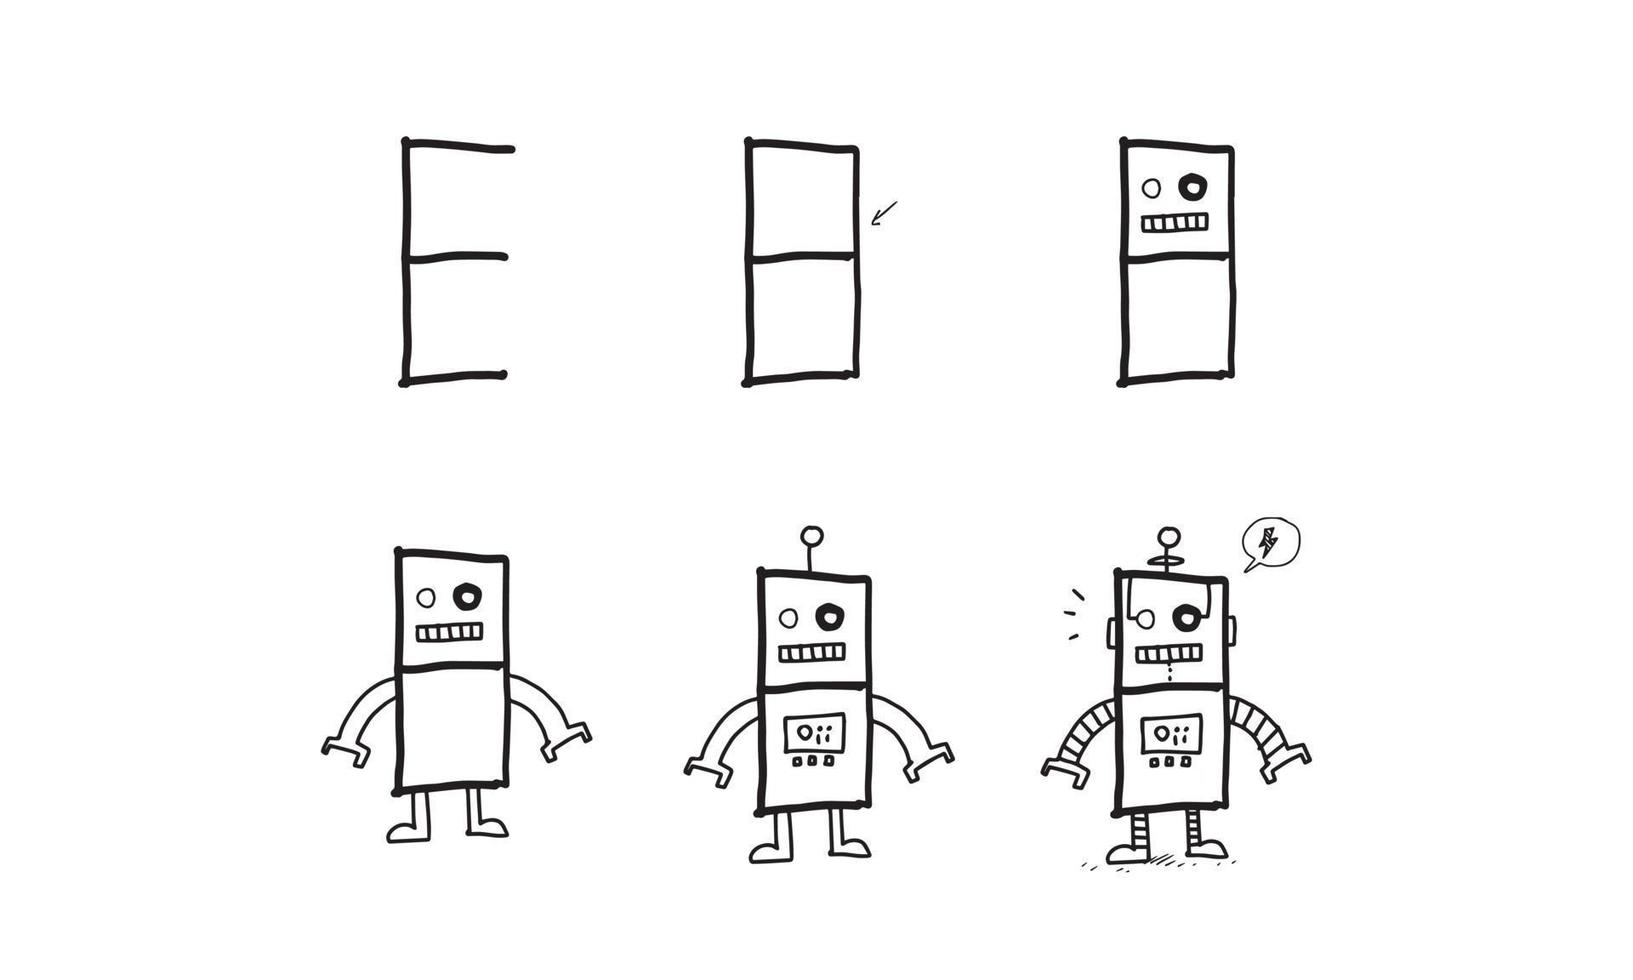 hoe je stap voor stap een futuristische robot tekent. gemakkelijke en leuke activiteit voor de ontwikkeling en creativiteit van kinderen. zelfstudie voor het tekenen van dieren en objecten uit alfabetreeksen in vectorillustratie. vector